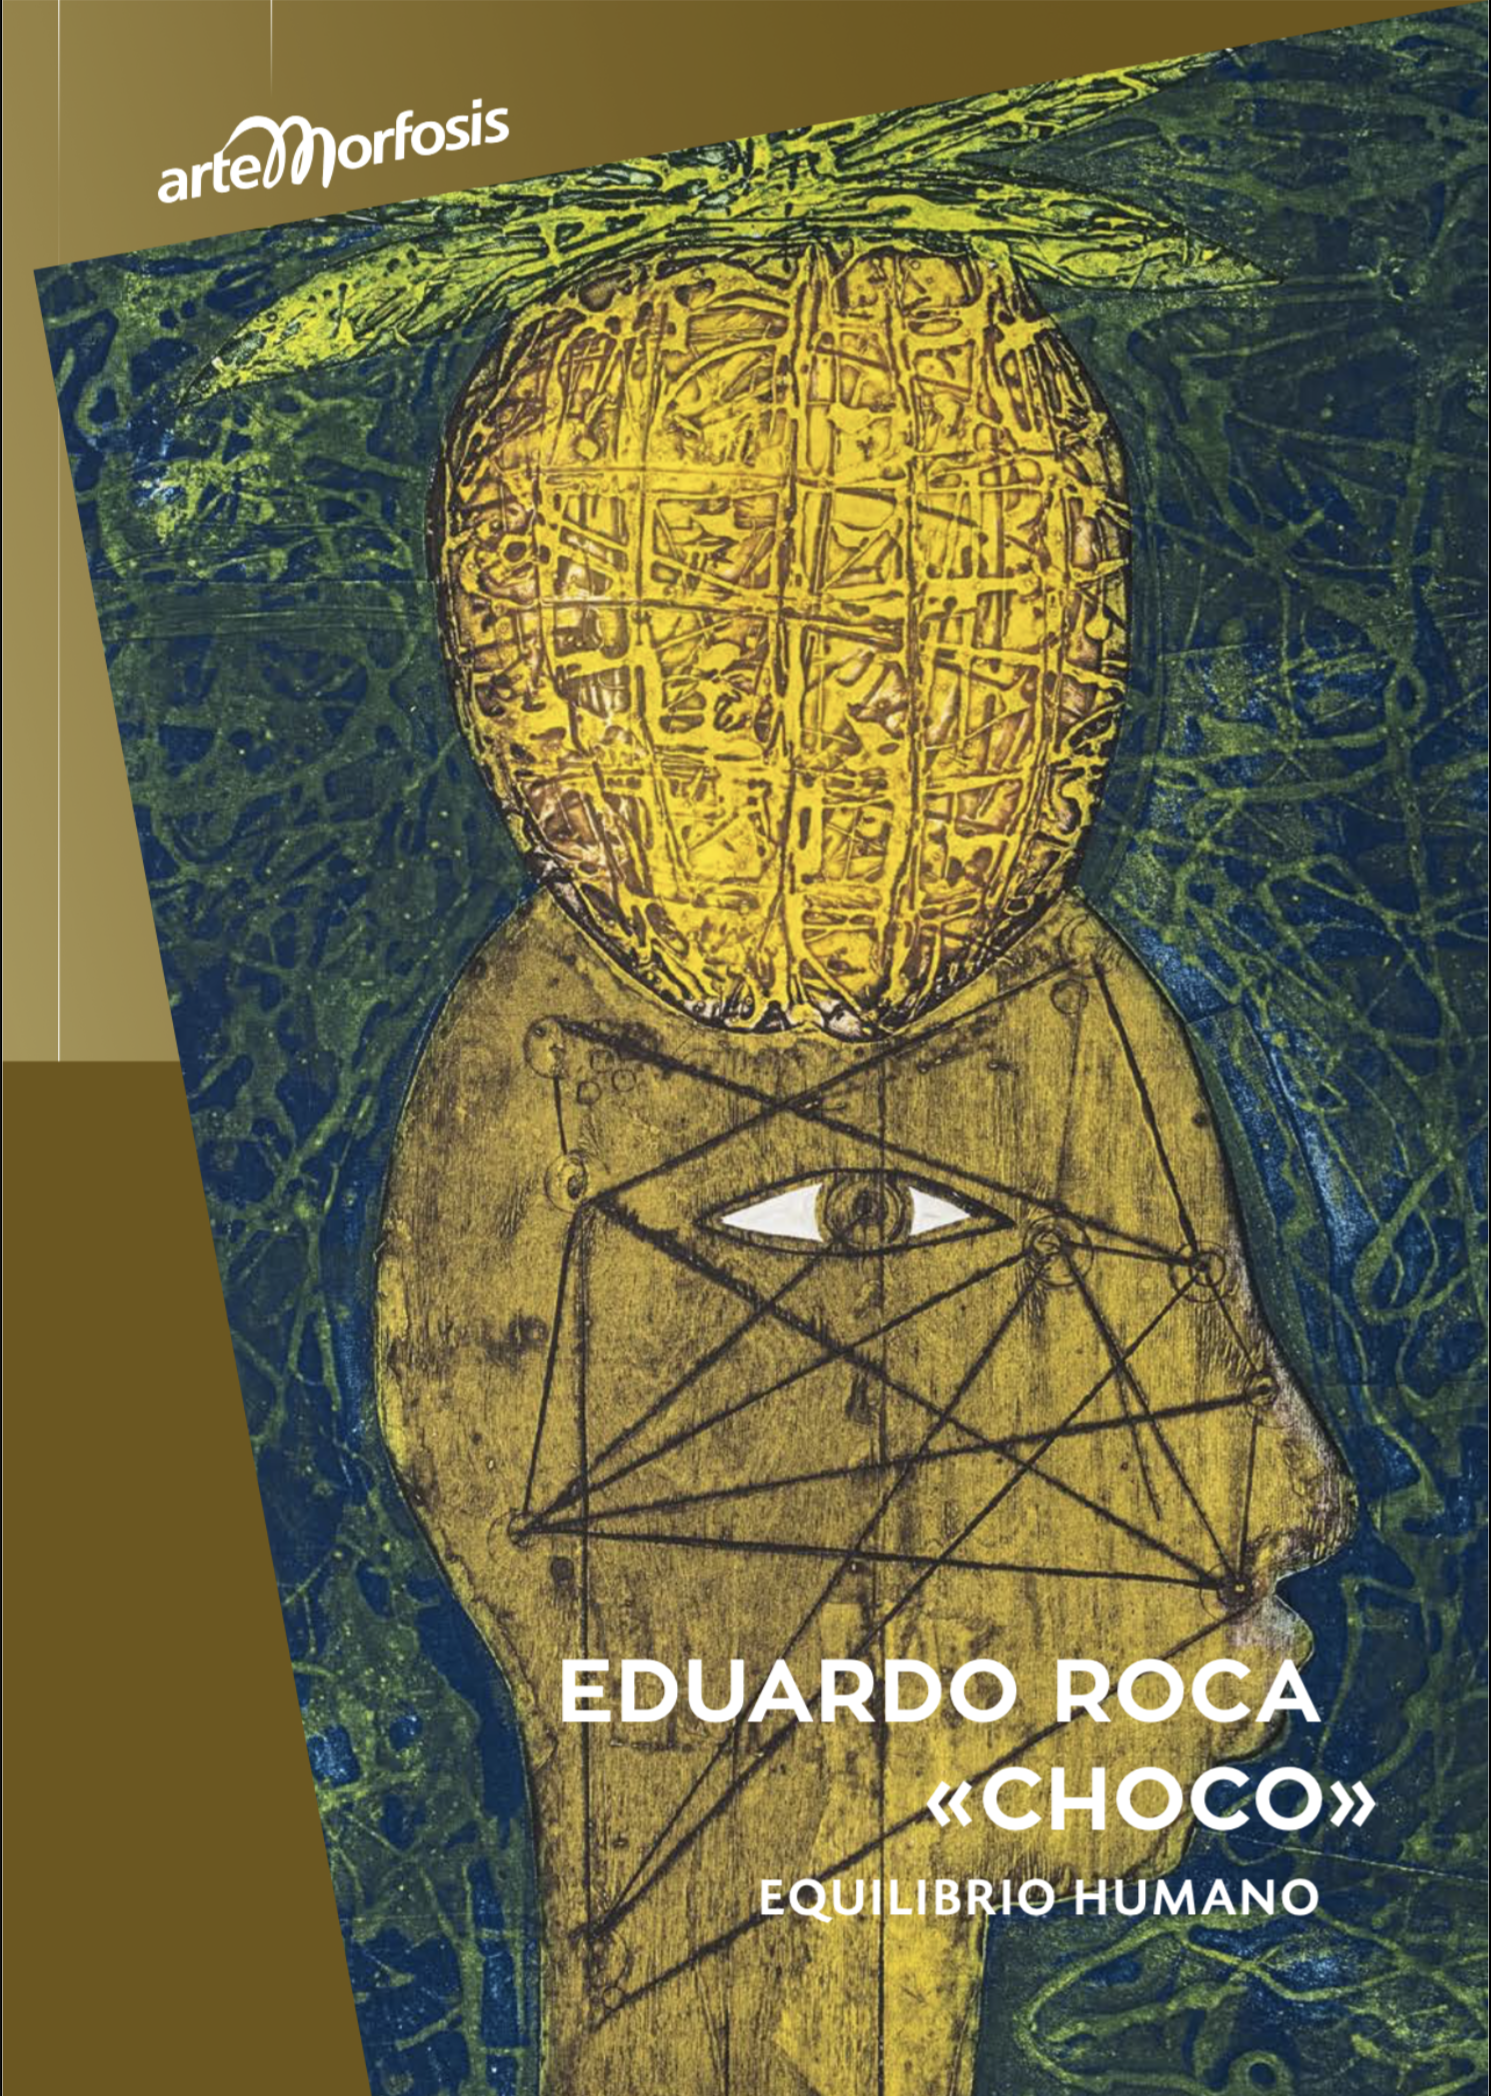 Eduardo Roca «CHOCO» – Equilibrio Humano